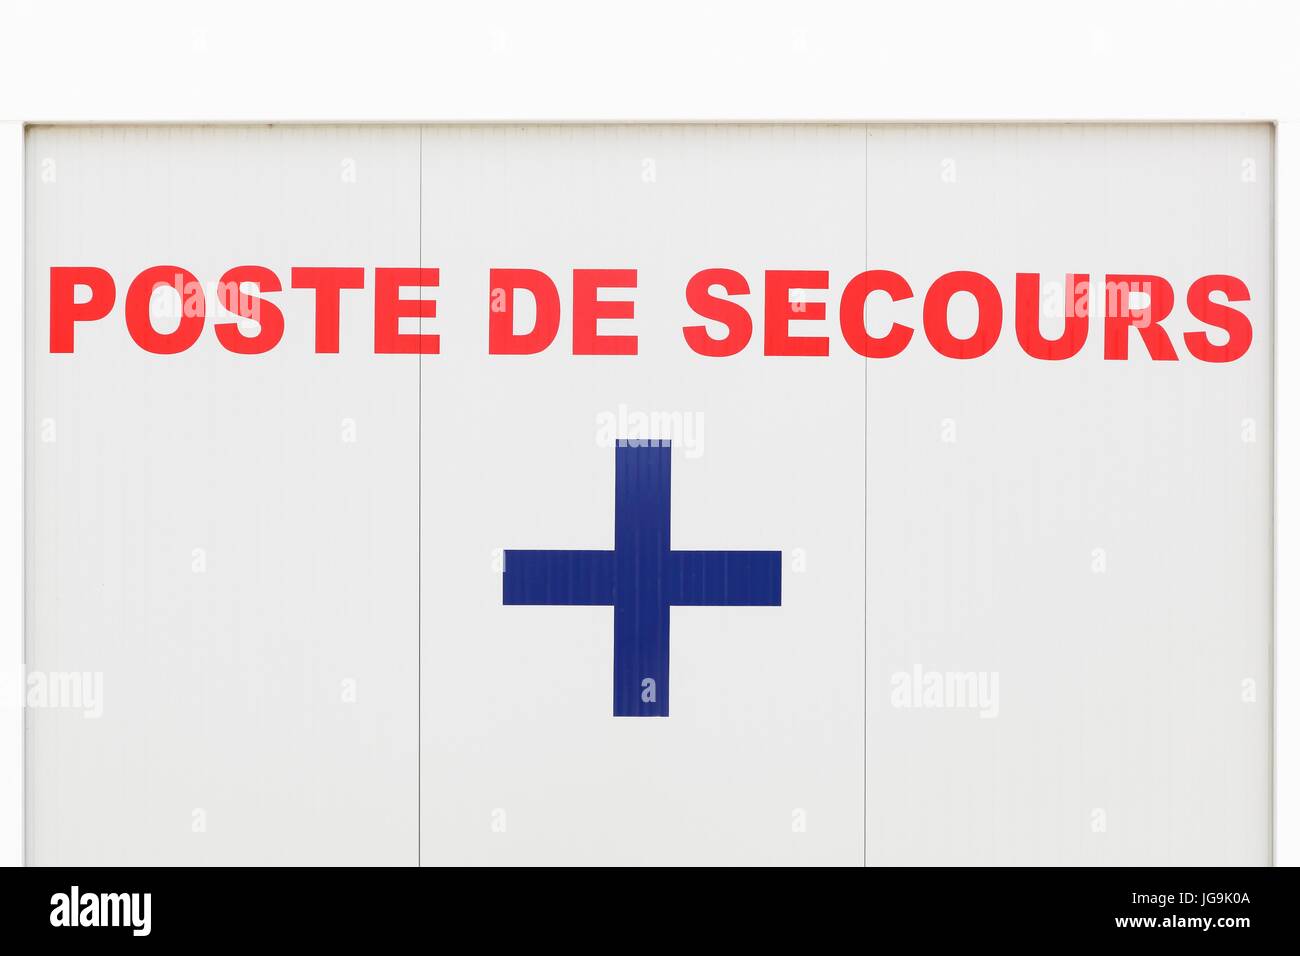 Poste de secours ou lifeguard bâtiment appelé poste de secours en Français Banque D'Images